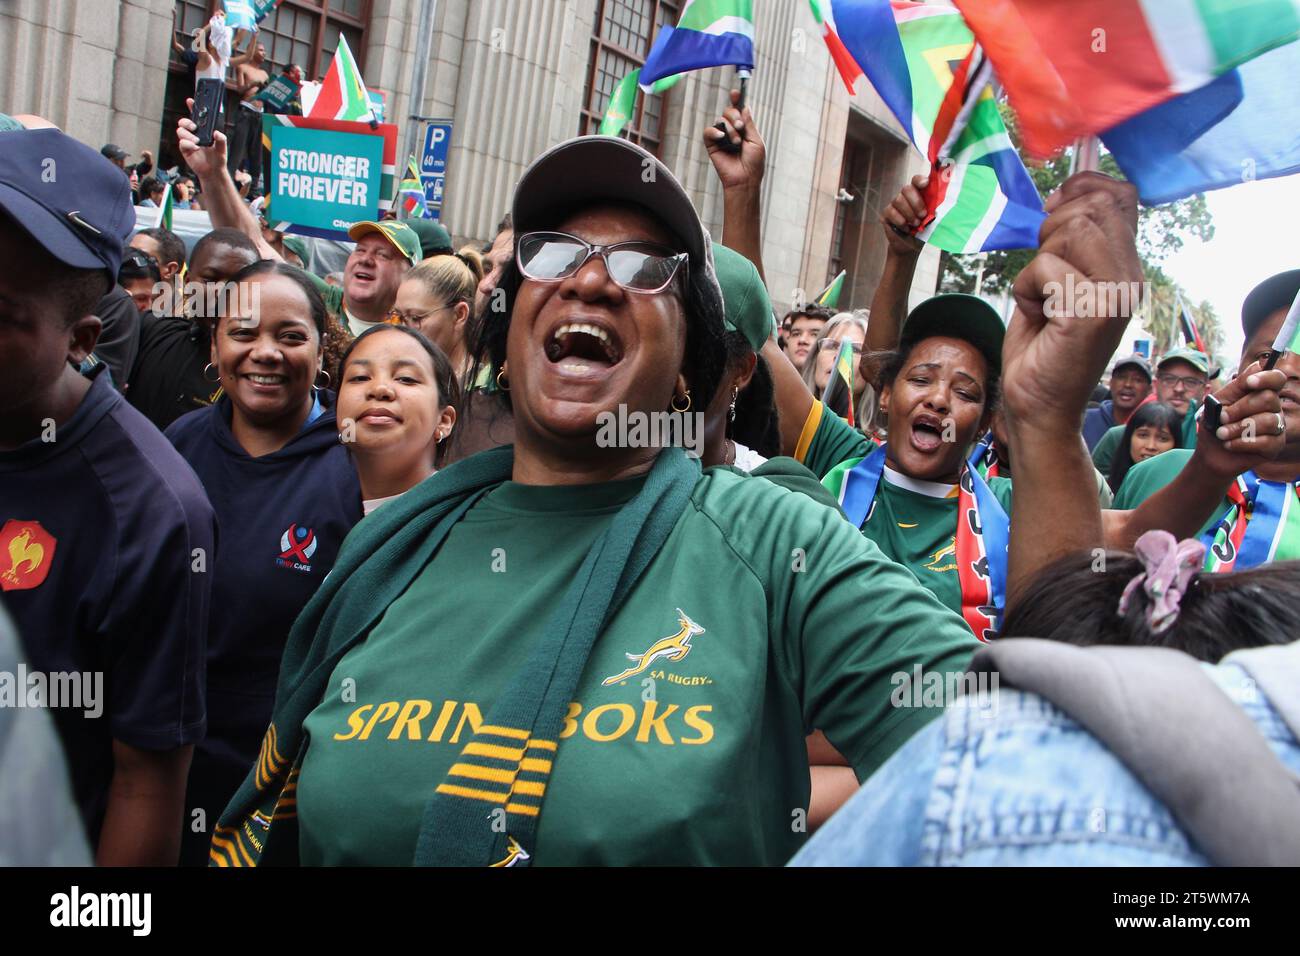 03 novembre 2023 - la foule soutient avec enthousiasme l'équipe de rugby Springbok dans les rues du Cap. L’équipe sud-africaine de rugby est revenue avec la coupe du monde pour la 4e fois. Cela faisait partie de leur tournée victorieuse en Afrique du Sud. Banque D'Images